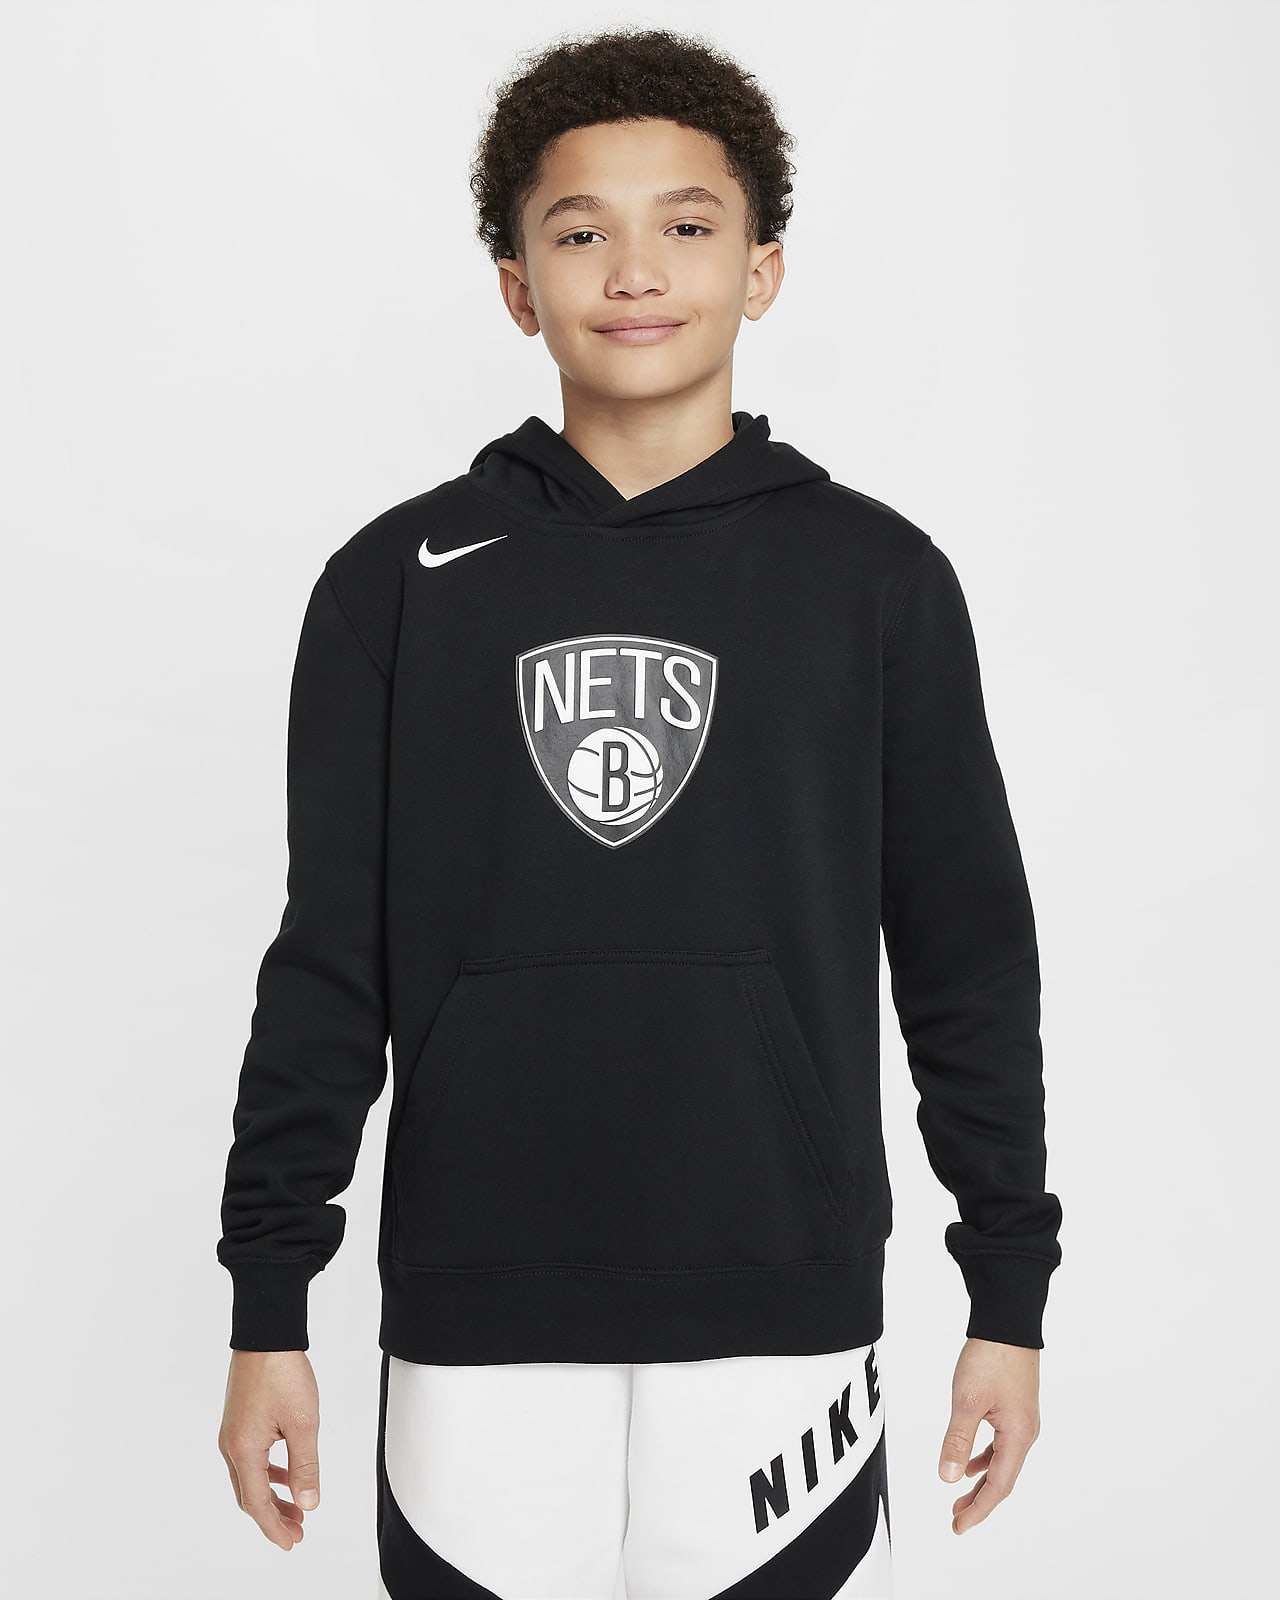 Brooklyn Nets Club Older Kids' Nike NBA Fleece Pullover Hoodie